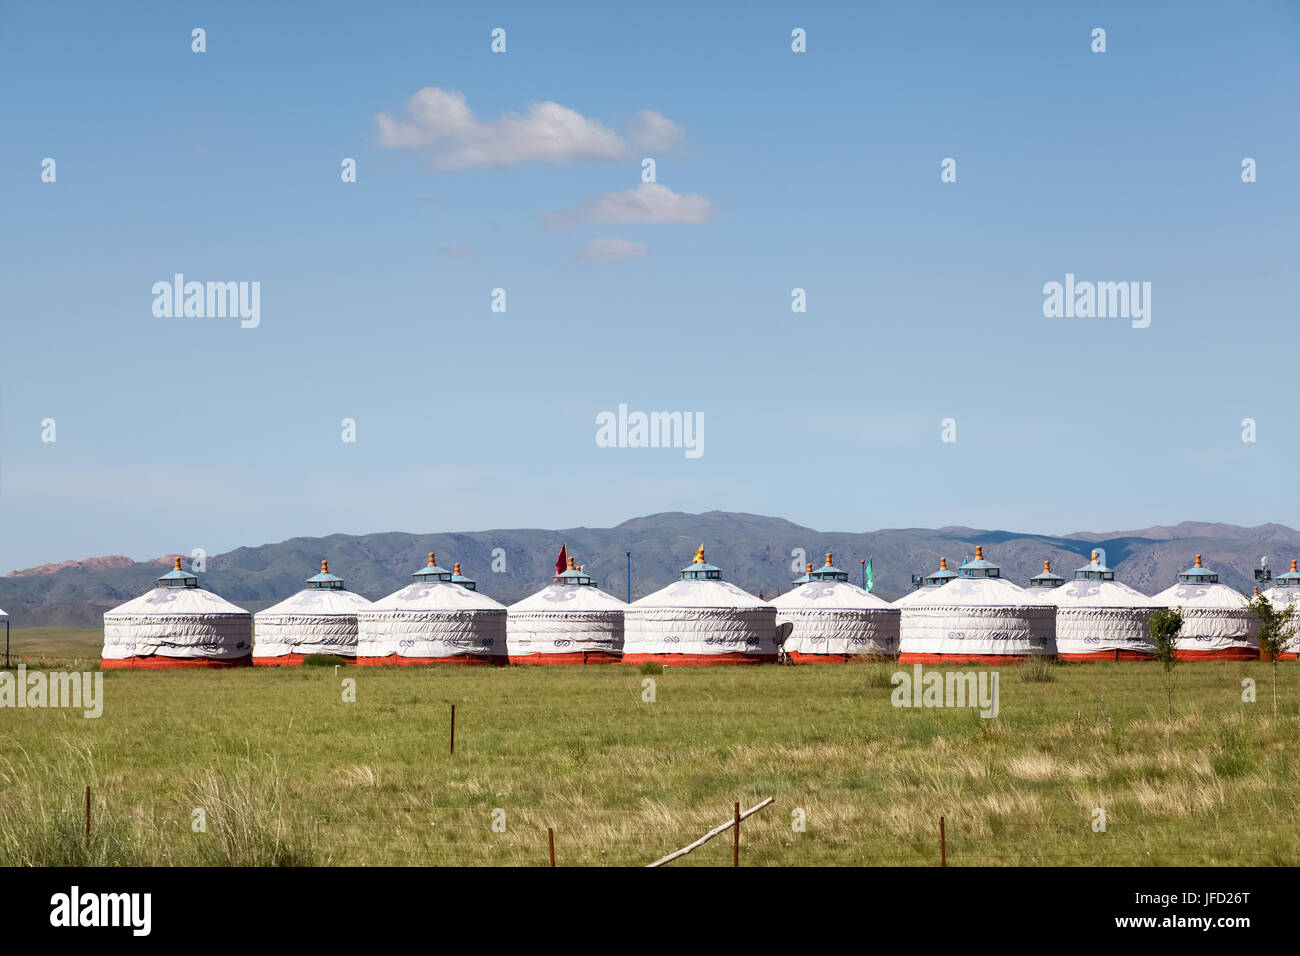 mongolian yurt in prairie Stock Photo